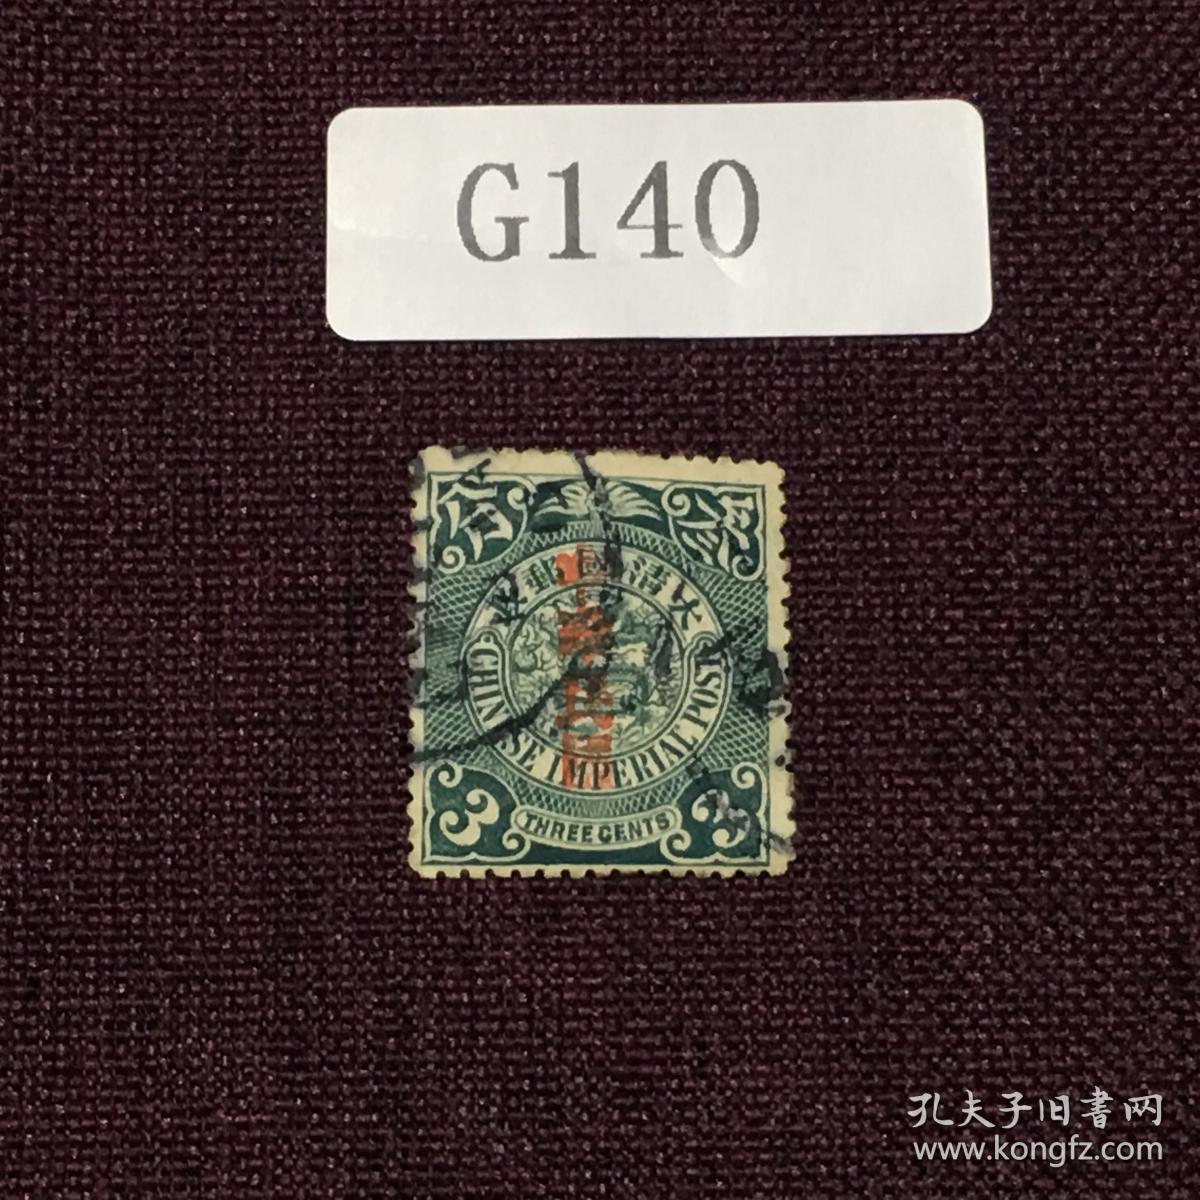 G140百年经典，大清蟠龙 加盖中华民国 邮票旧一枚 亲们，再来点清蟠龙，趁目前还没有很高价格人人都可以入手一套，蟠龙是会集邮者着迷的，就像蒙娜丽莎的微笑越研究越迷人，48元/枚起，注意起，戳票高值肯定不是这个价。